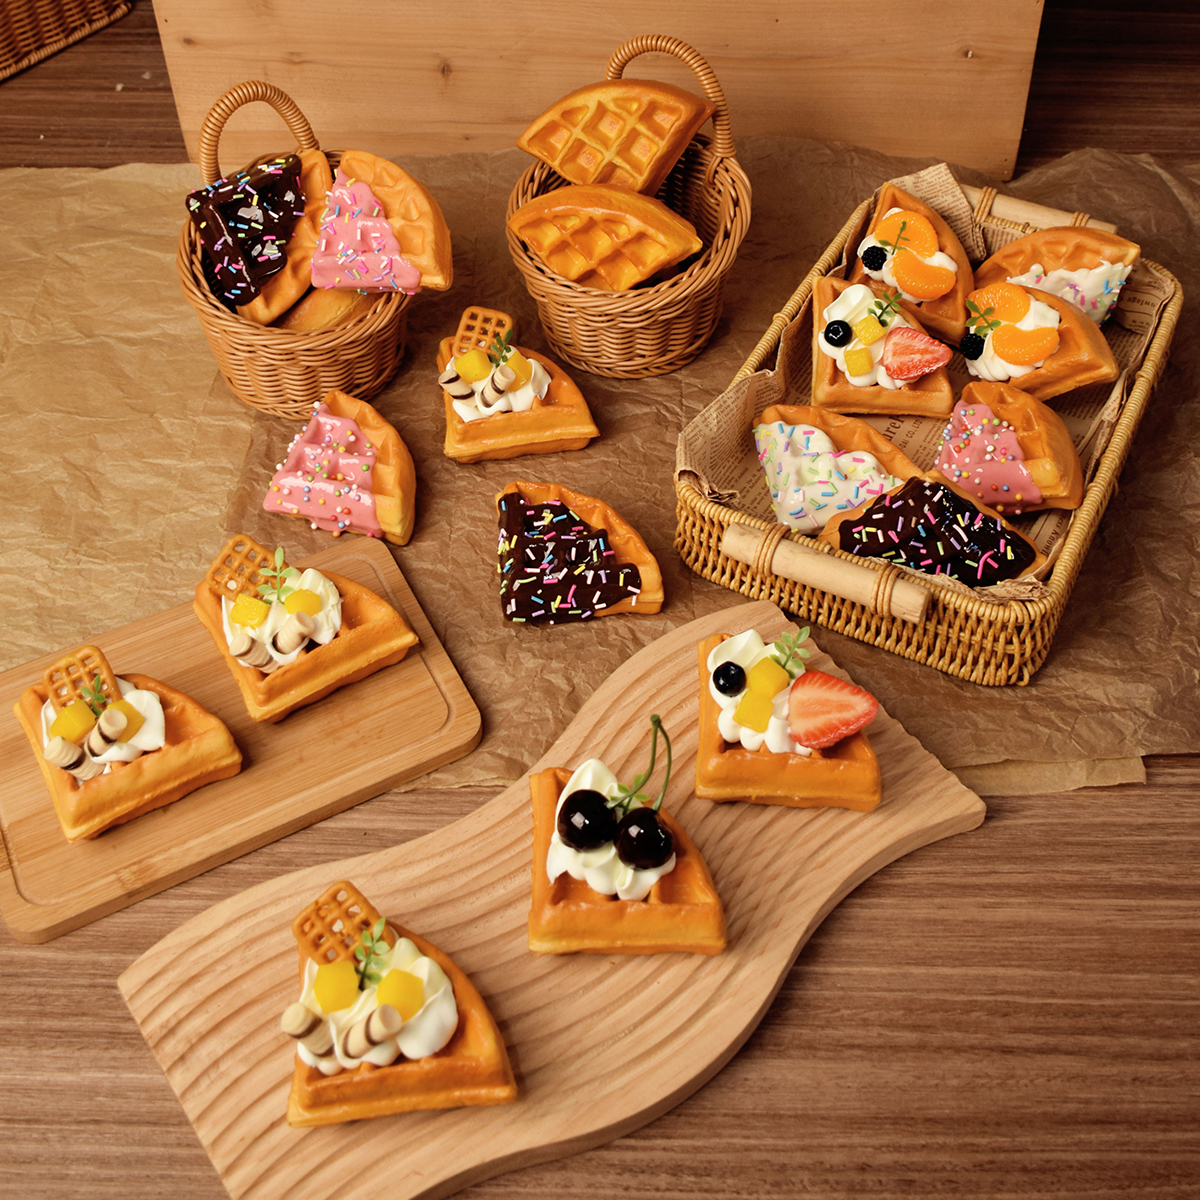 仿真华夫饼草莓水果奶油料理面包甜品台装饰模型烘焙展示样品拍摄